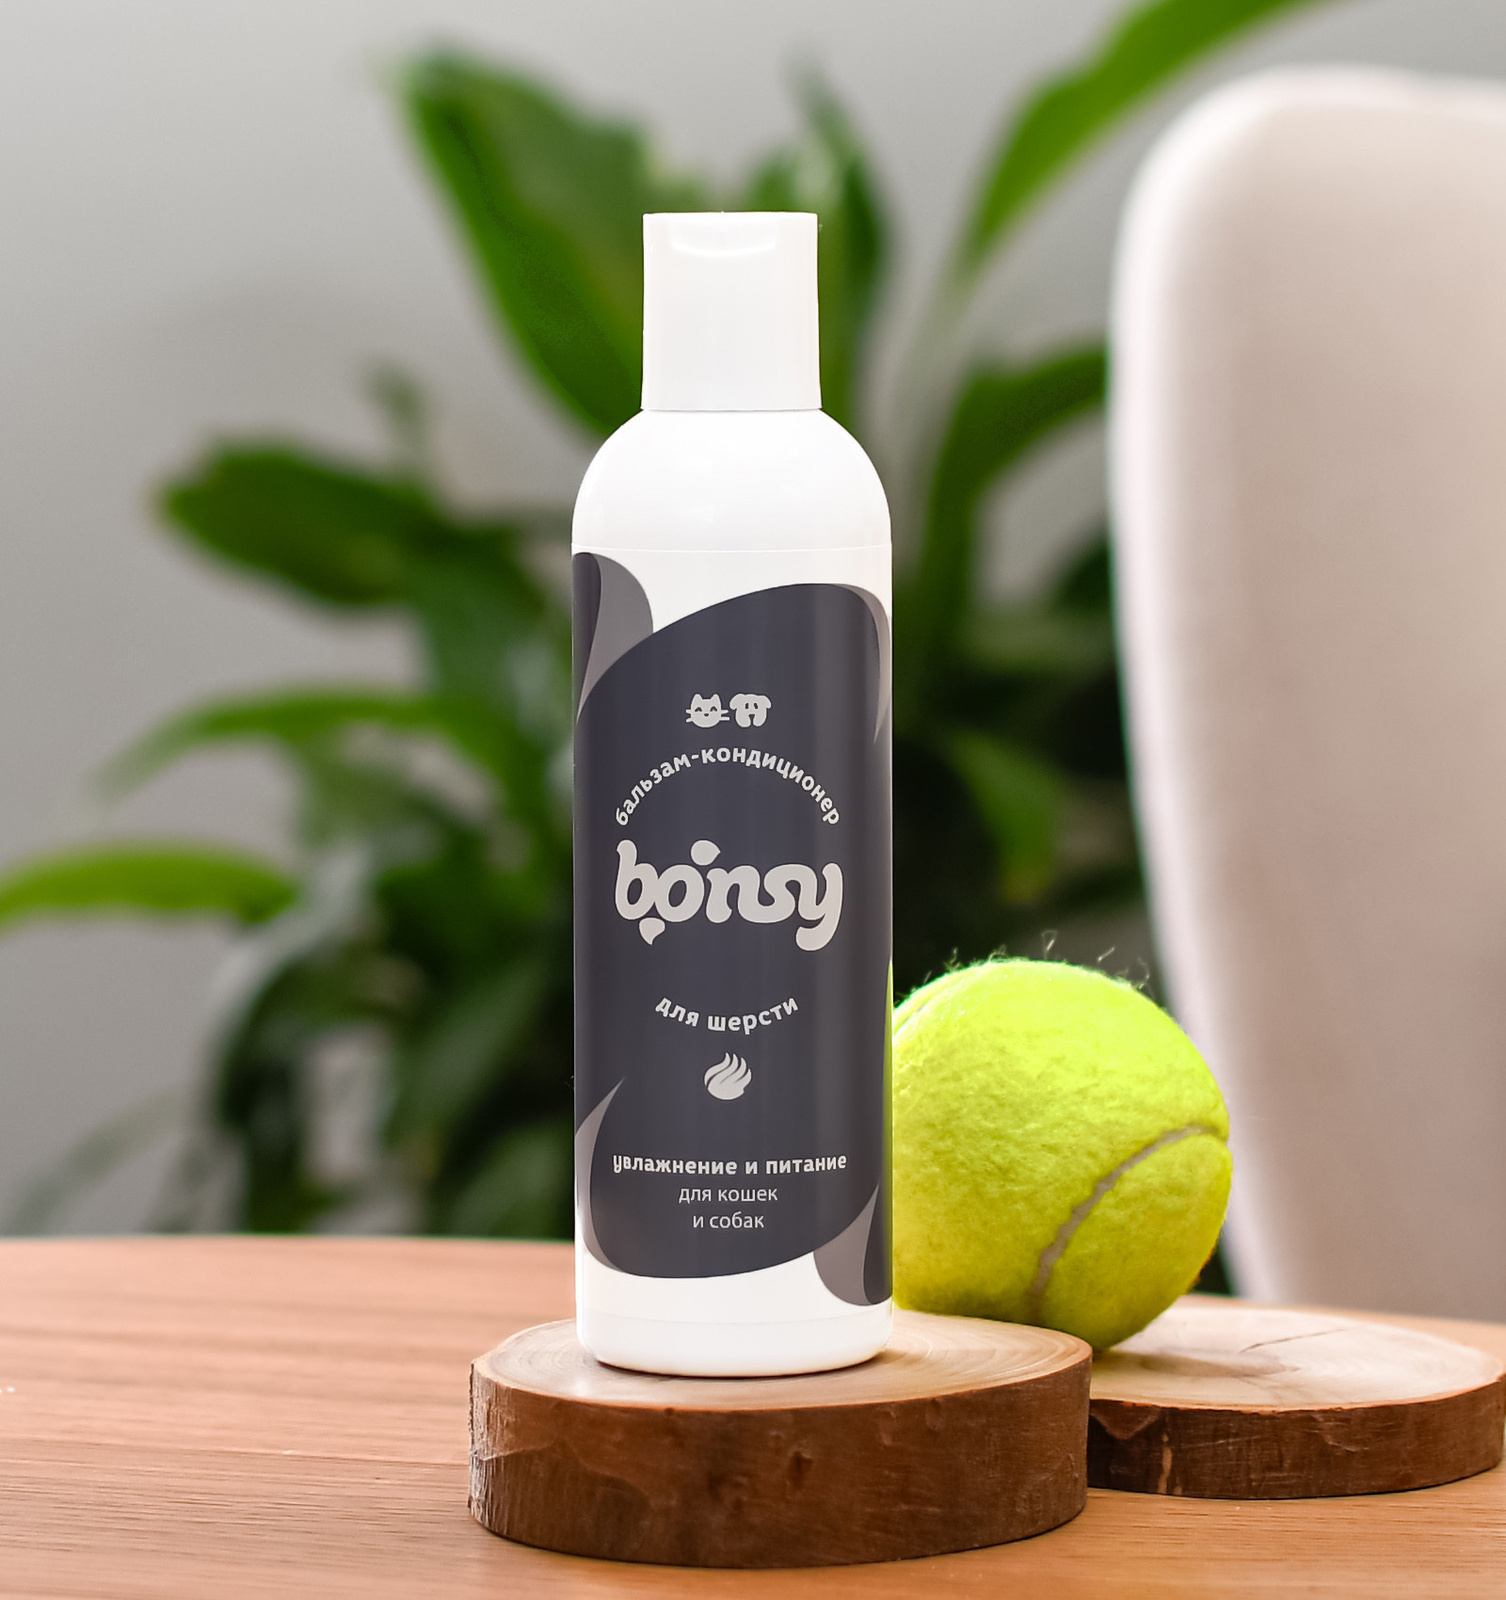 Bonsy Bonsy бальзам-кондиционер увлажнение и питание для кошек и собак (250 мл) bonsy bonsy зубная паста со вкусом печени для кошек и собак 75 мл